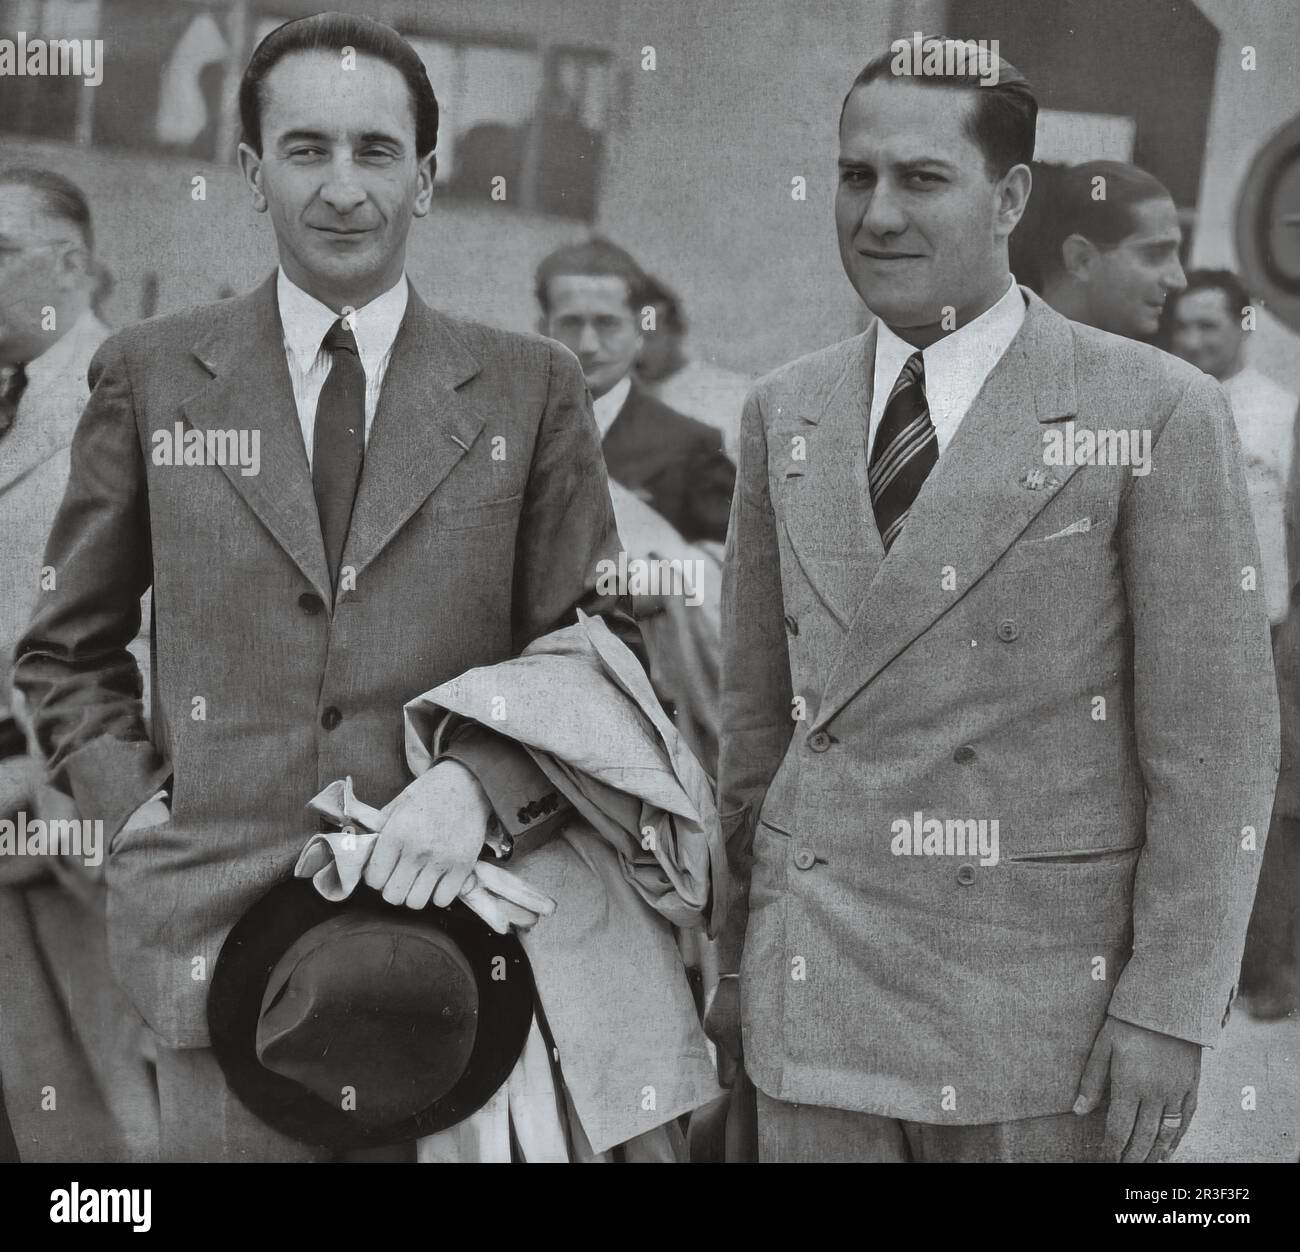 Gian Galeazzo ciano, uomo politico italiano, figura importante del regime fascista italiano, nel 1930 sposò Edda, figlia di Mussolini. Foto Stock